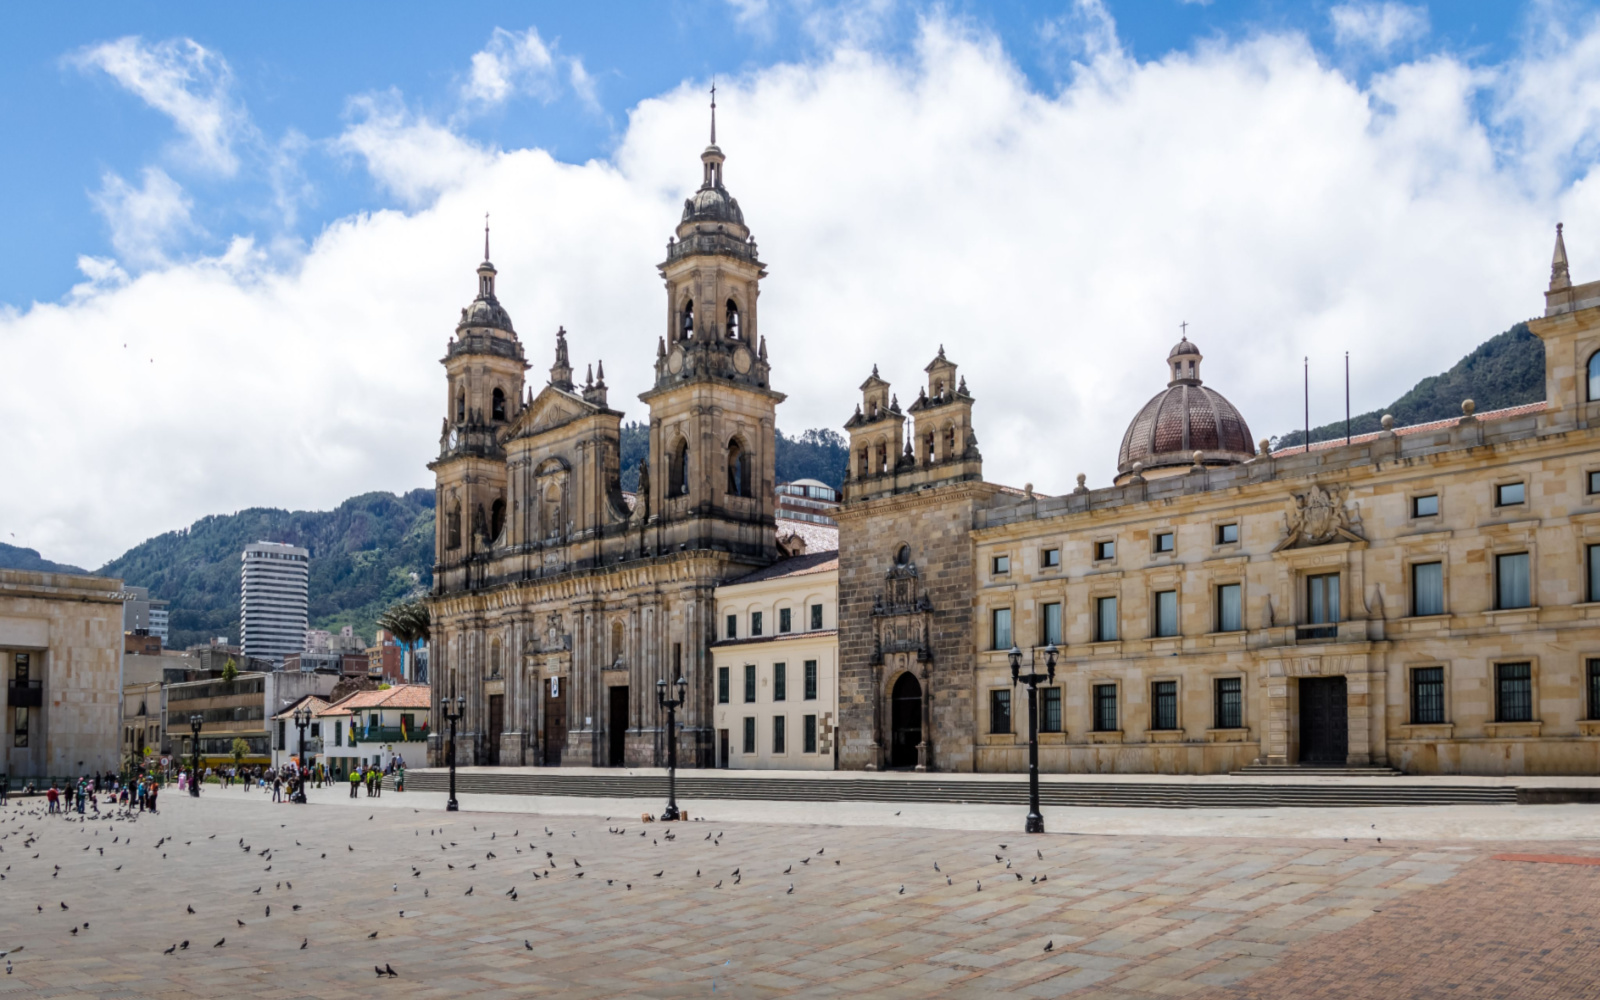 Is Bogotá Safe? | Travel Tips & Safety Concerns